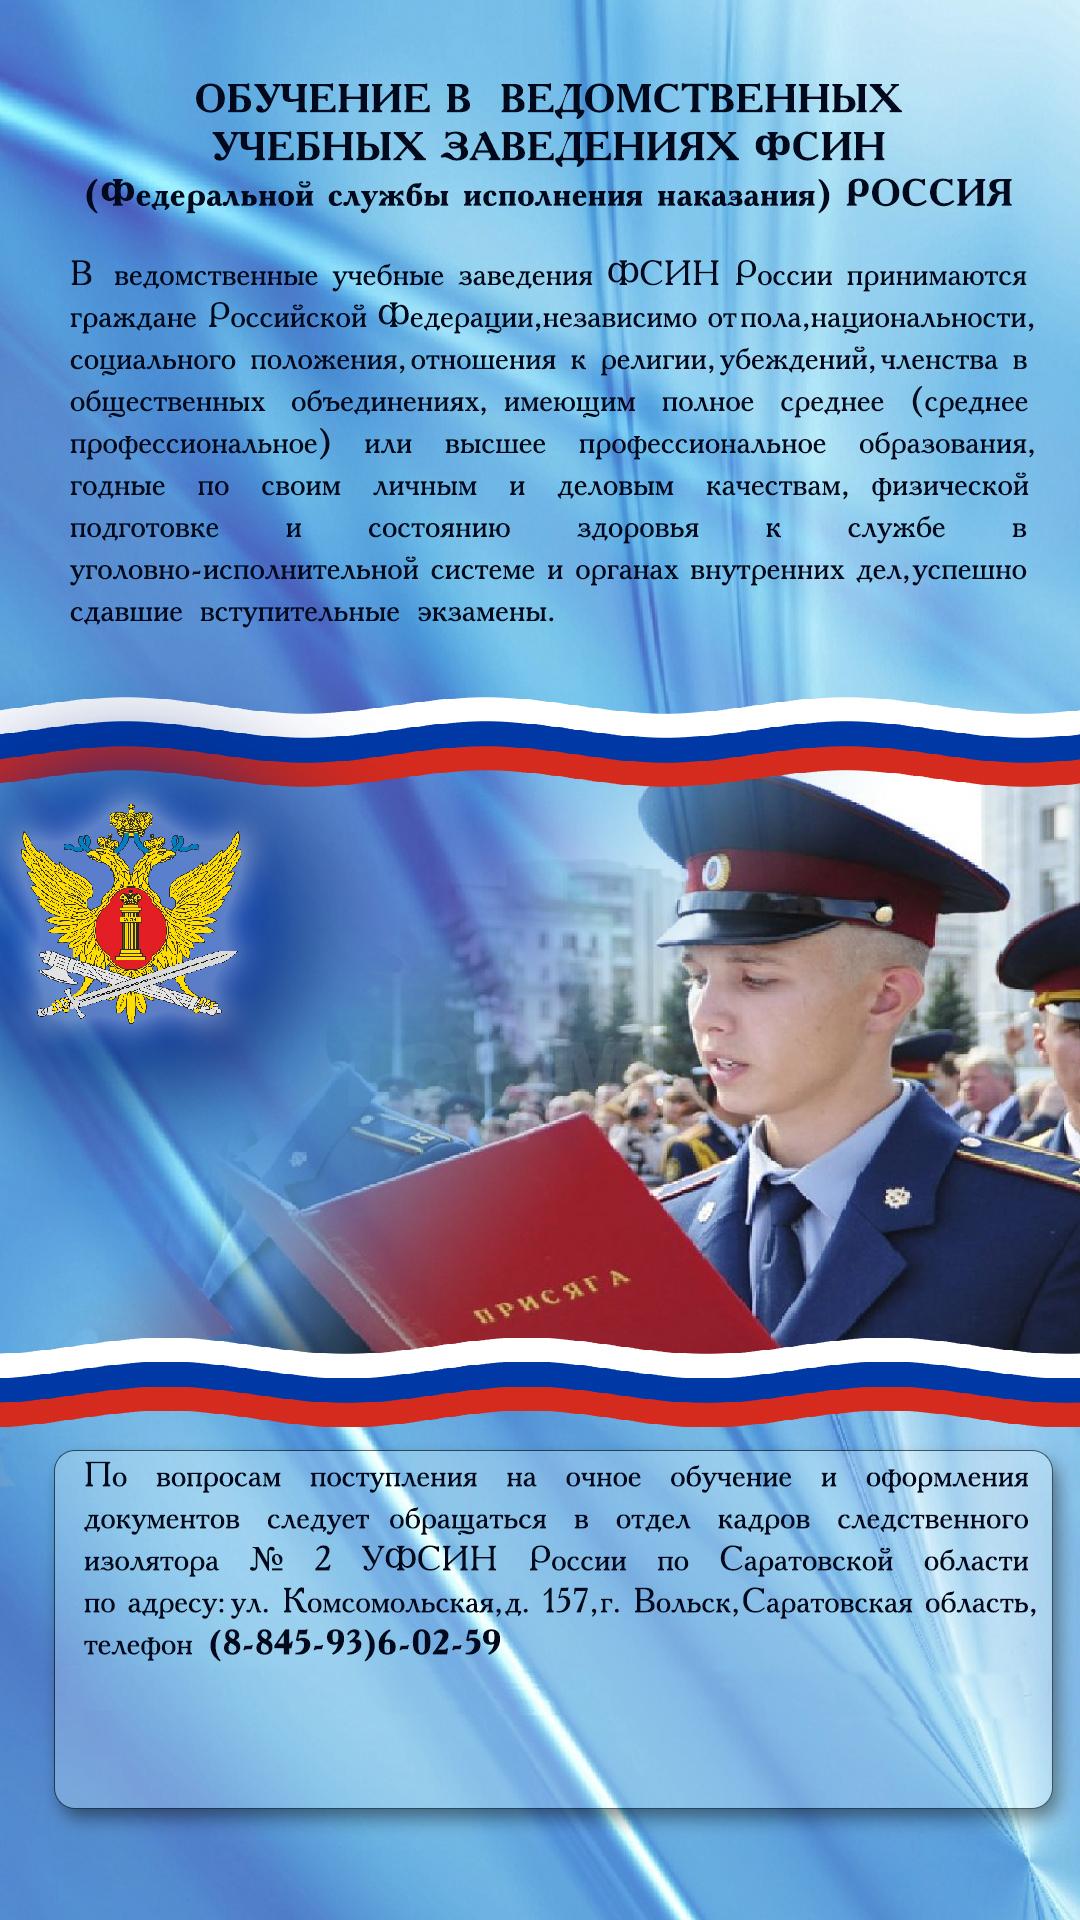 Федеральная служба исполнения наказаний (ФСИН) России.